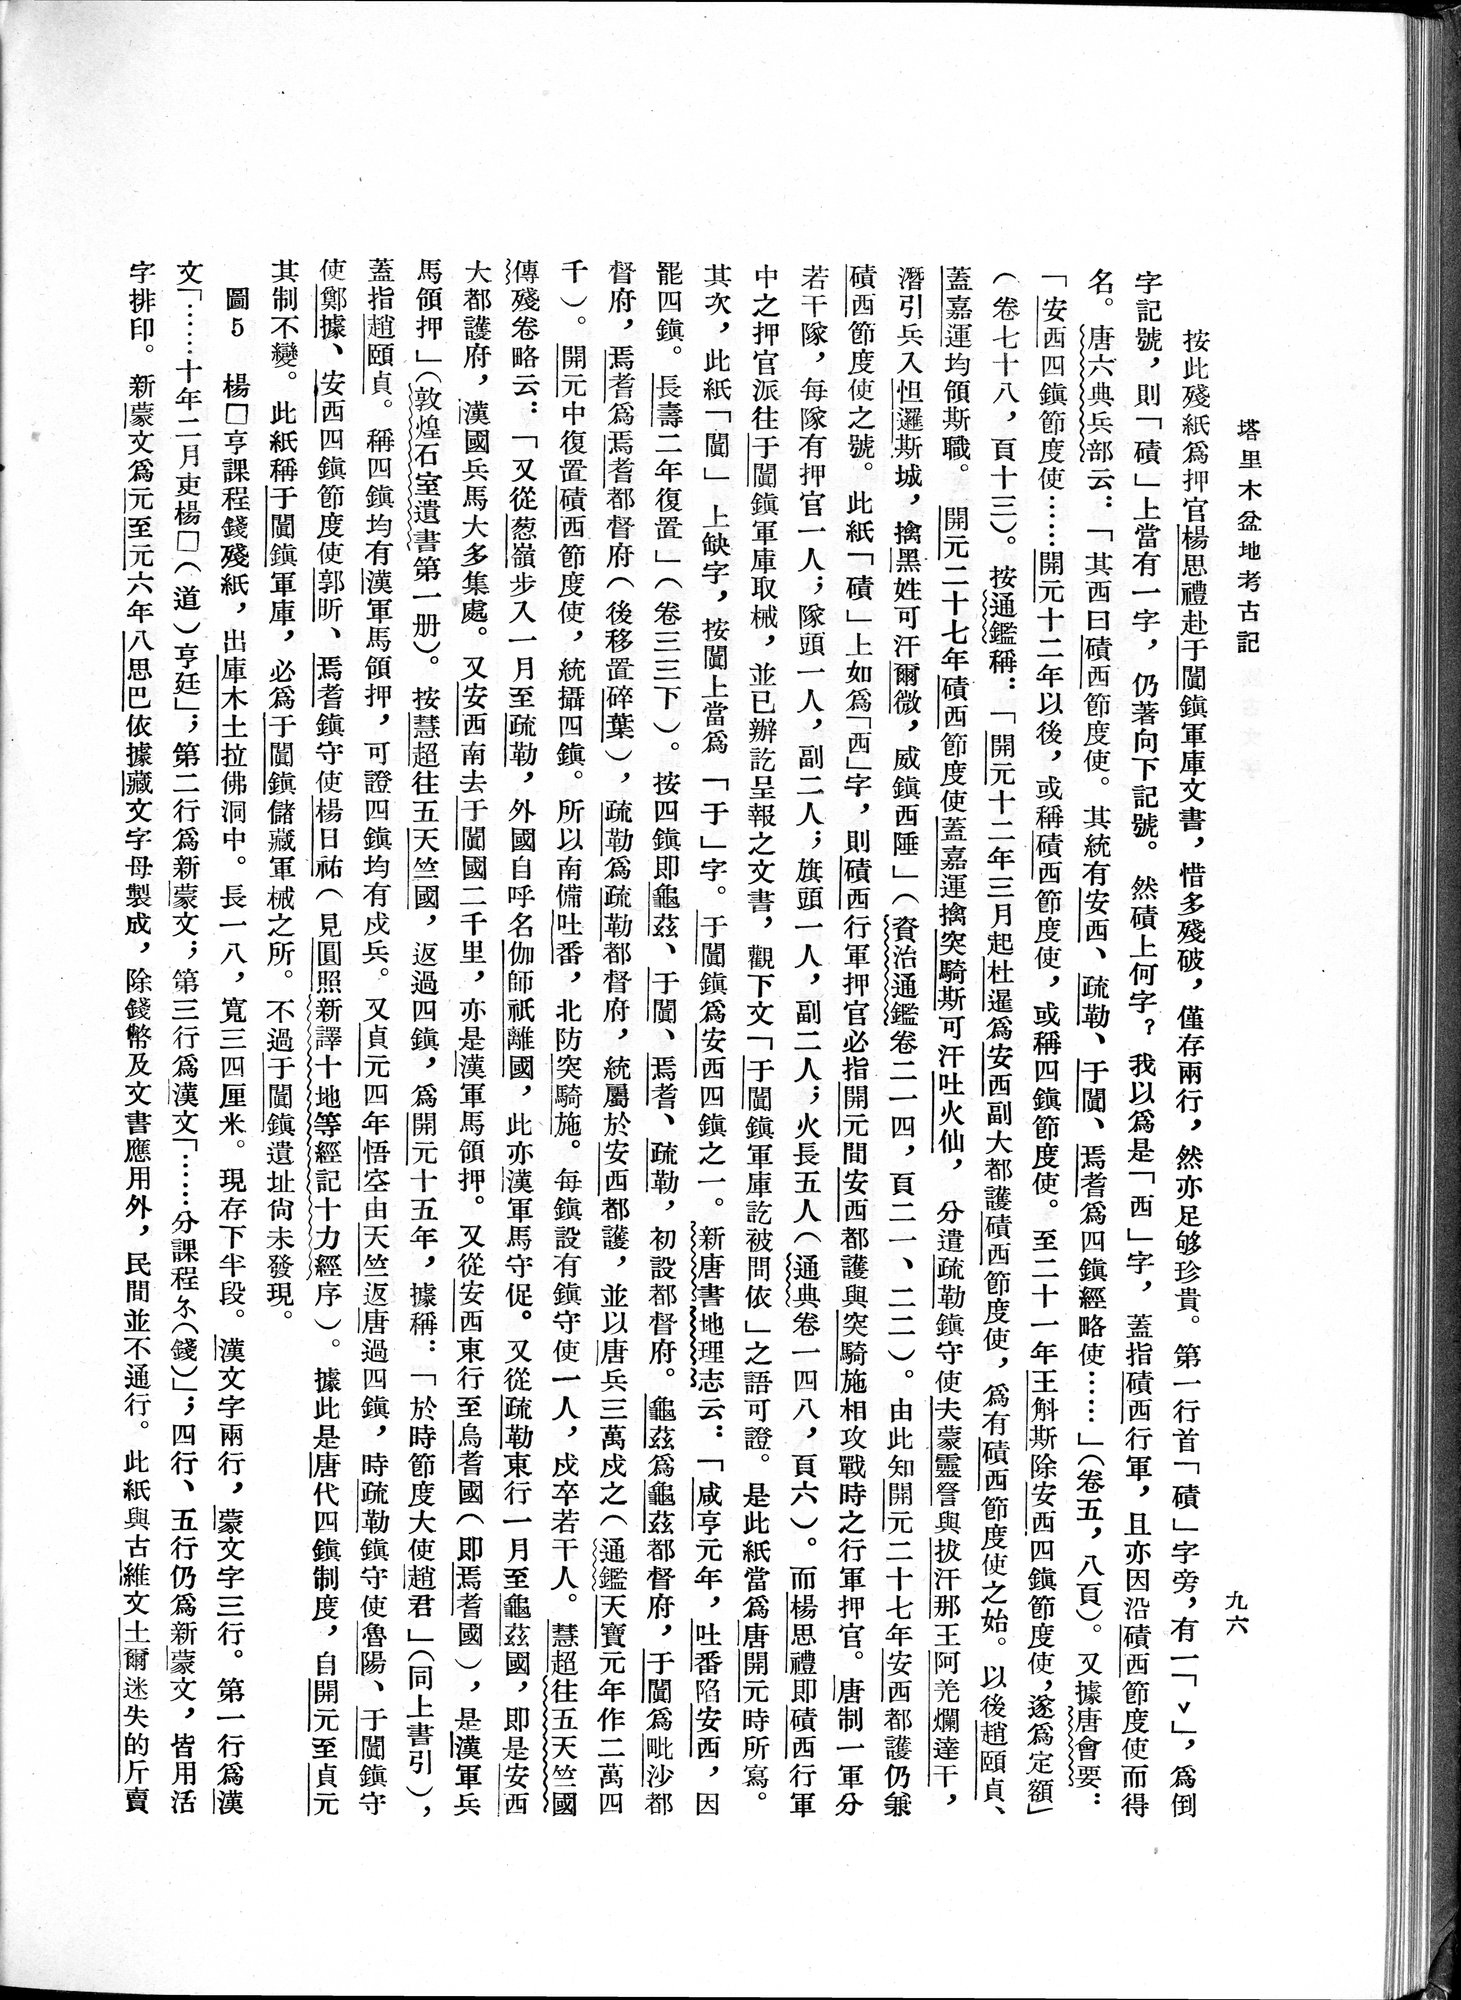 塔里木盆地考古記 : vol.1 / Page 160 (Grayscale High Resolution Image)